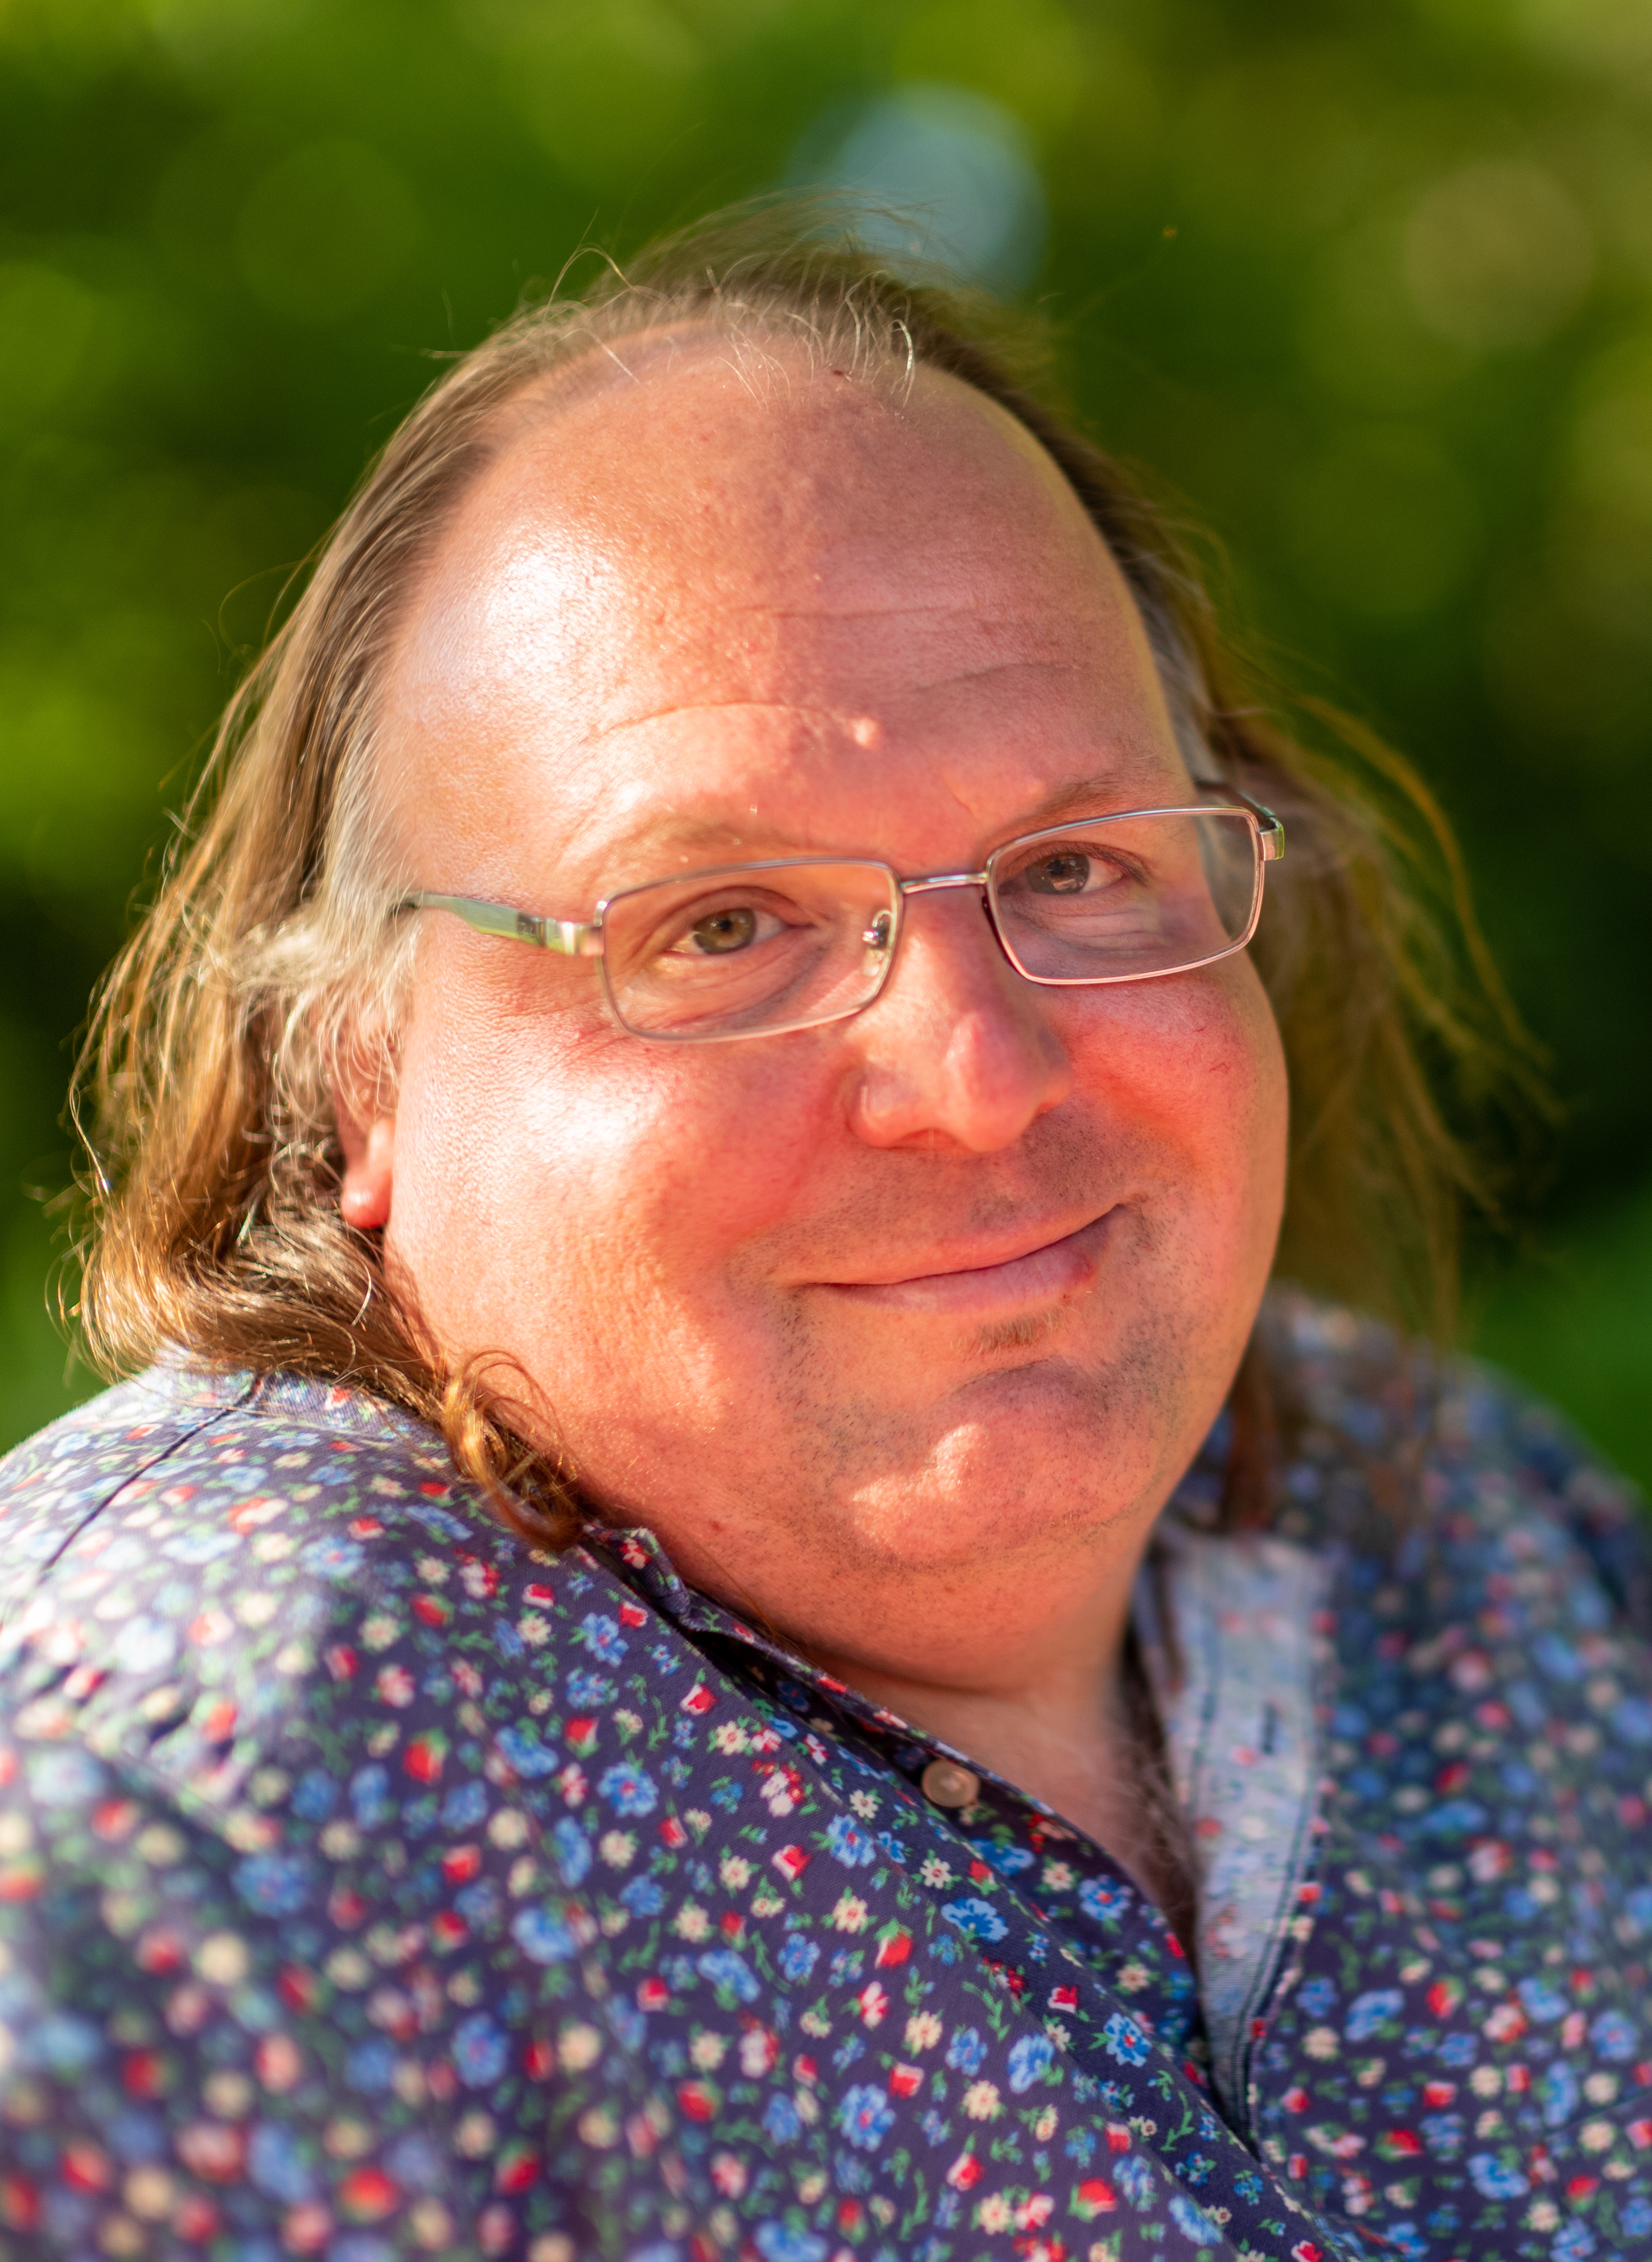 auteur Ethan Zuckerman de la citation L'ingénierie est cette idée que nous pouvons aider les gens à trouver des connexions inattendues mais utiles à un rythme meilleur que aléatoire. Et à certains égards, il est basé sur la réévaluation de cette notion de hasard comme chanceuse - de considérer le sérentissement comme intelligent.